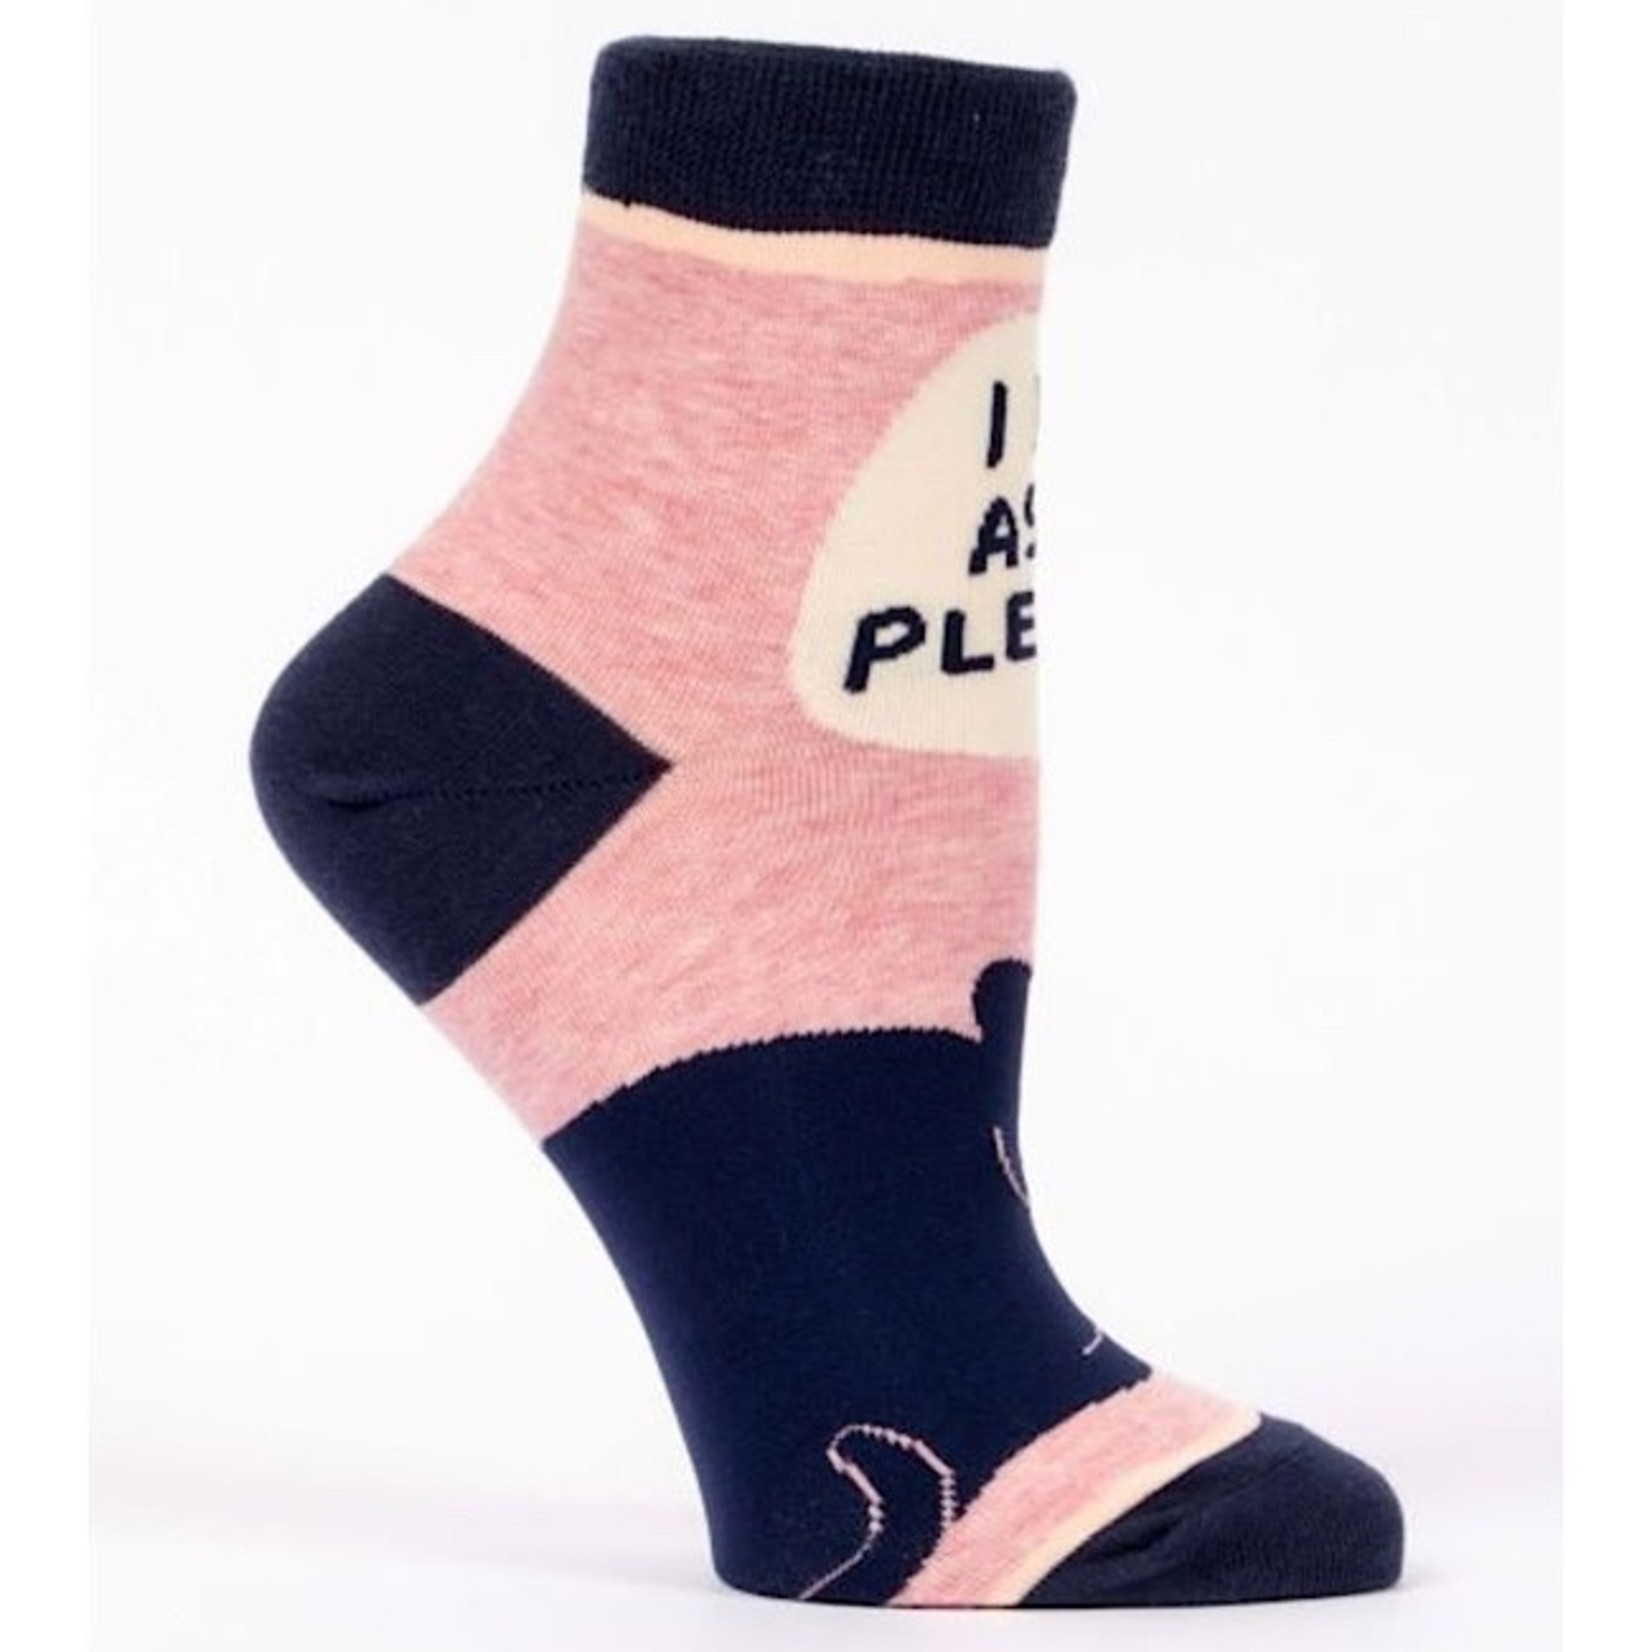 Socks (Womens) (Ankle) - I Do As I Please